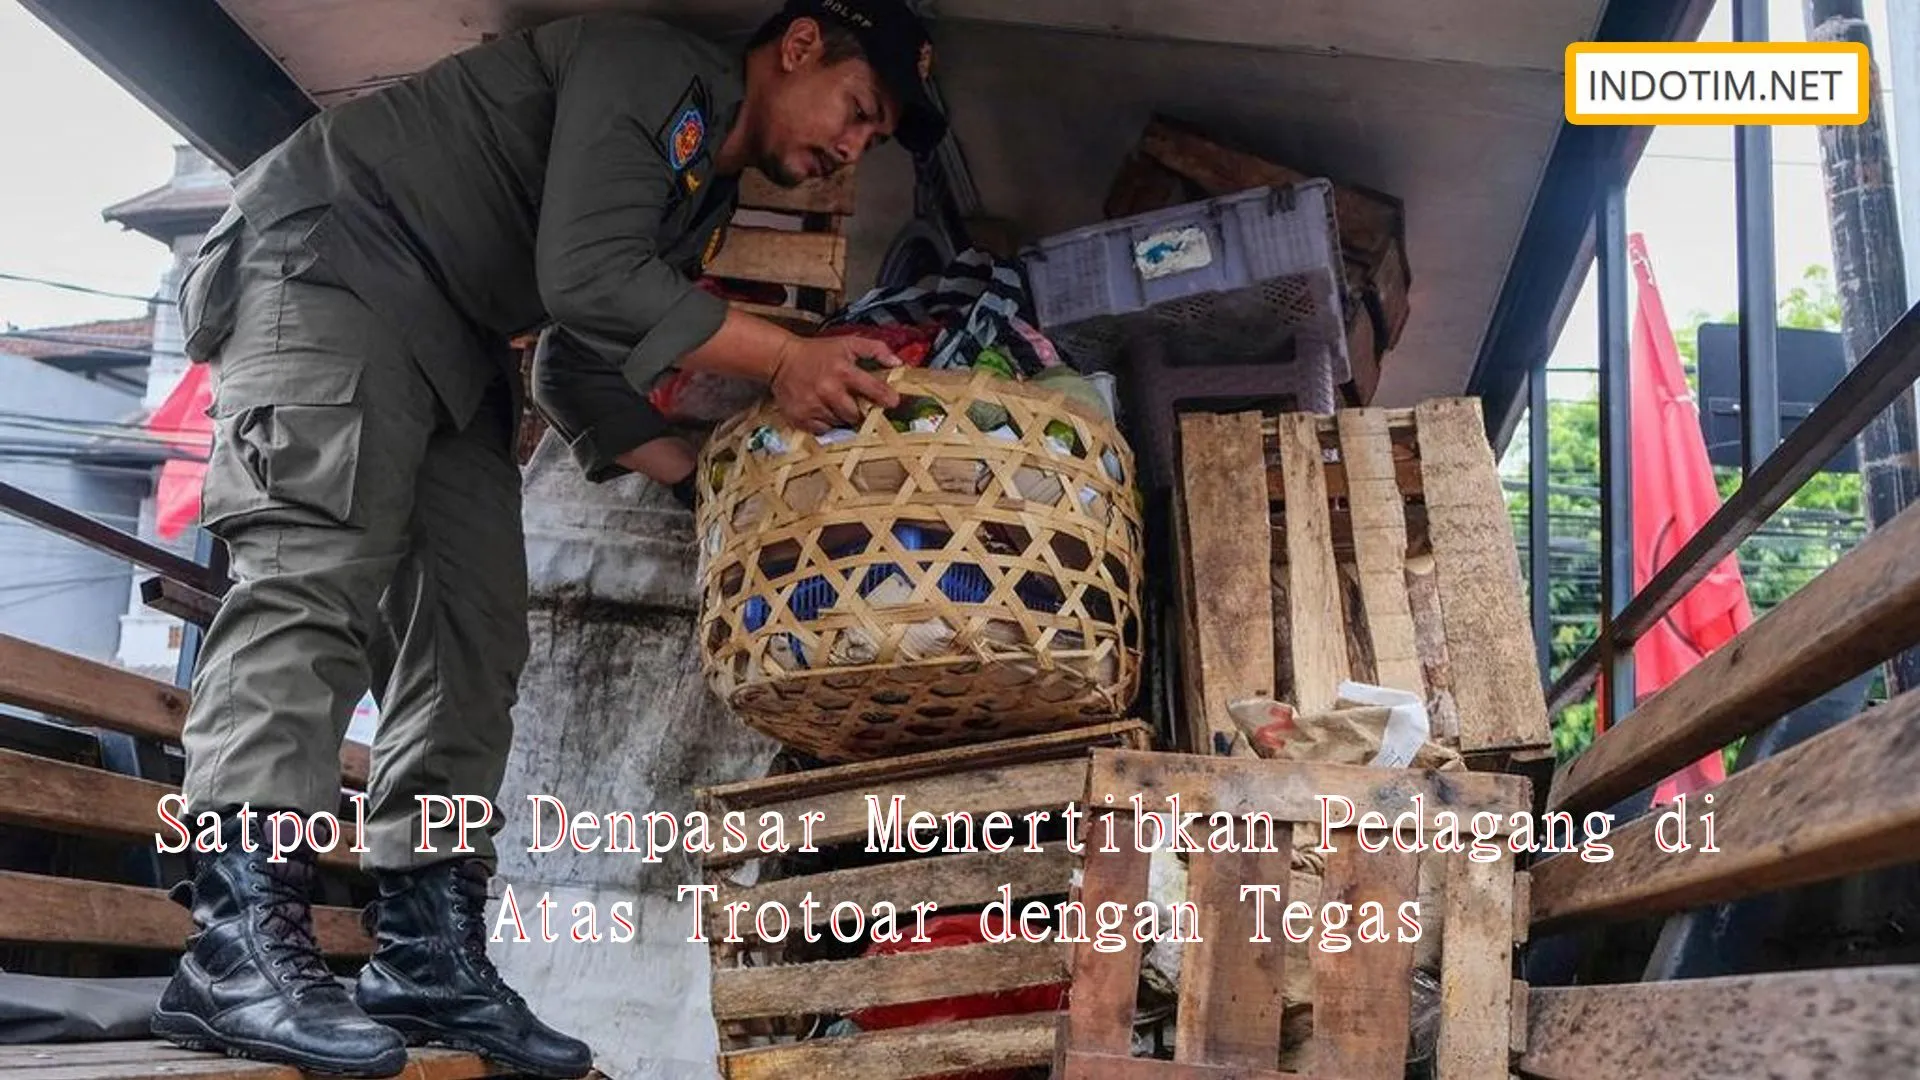 Satpol PP Denpasar Menertibkan Pedagang di Atas Trotoar dengan Tegas